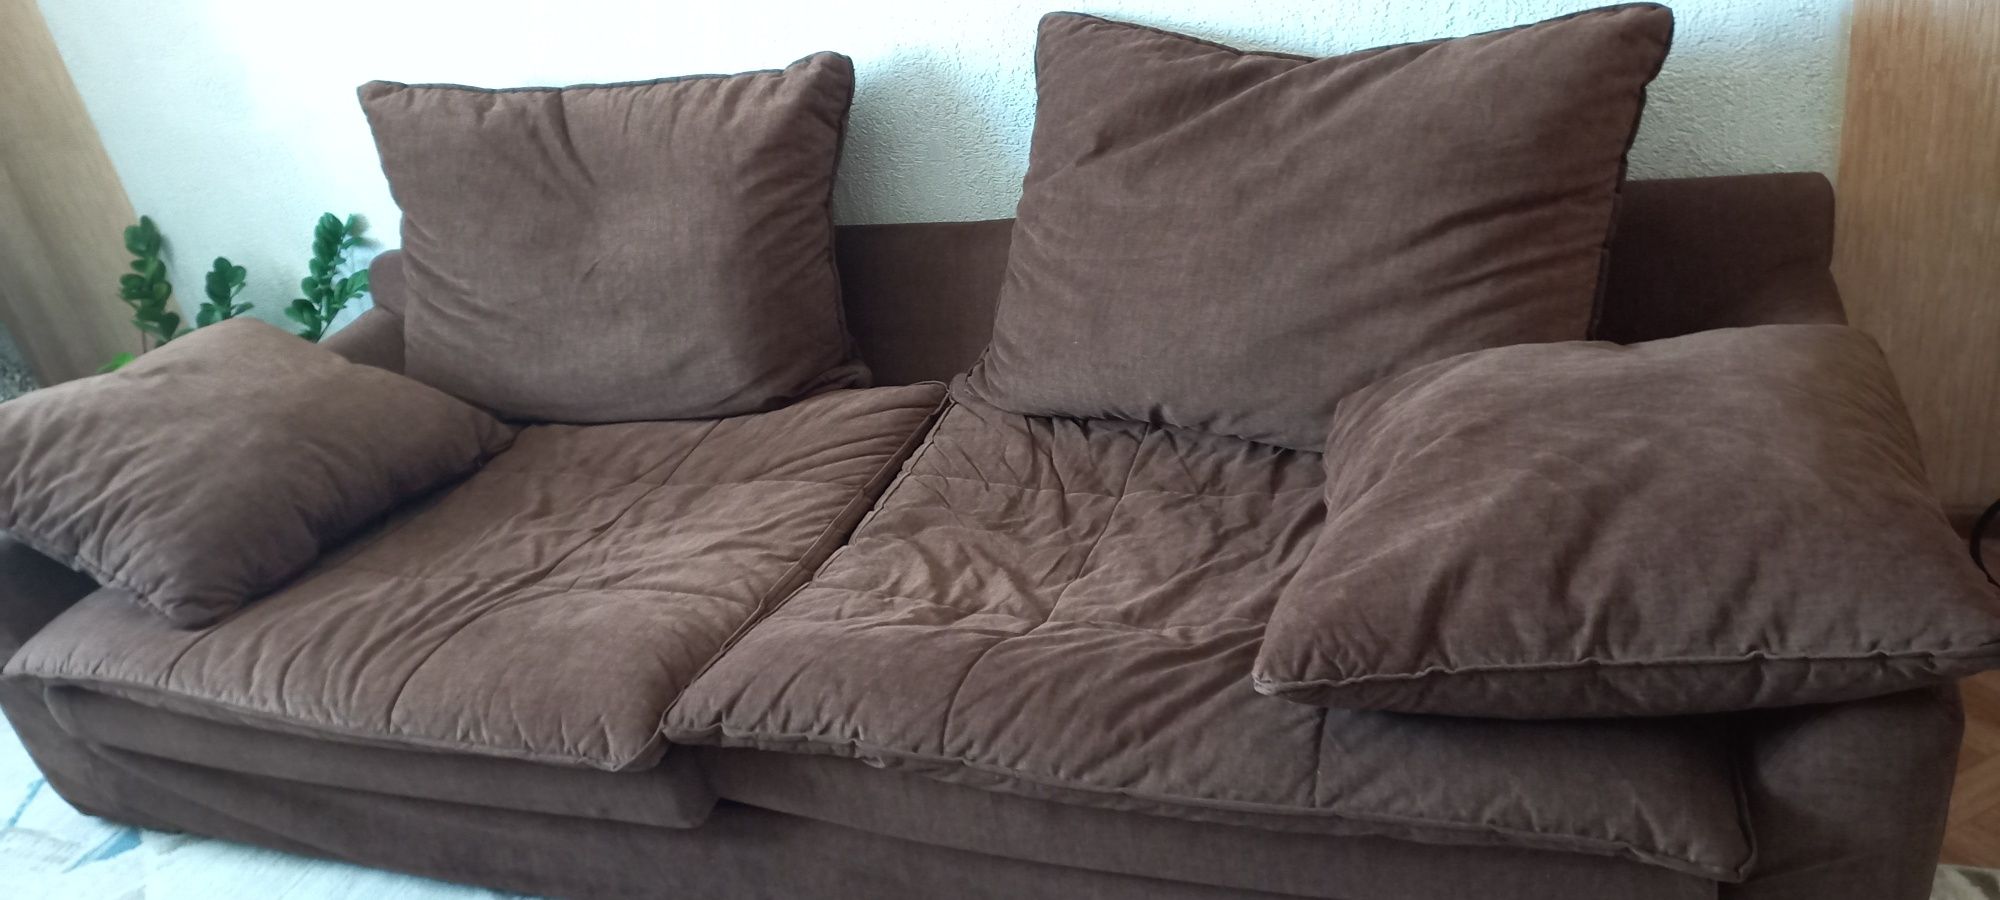 Продаётся мягкий диван в хорошем состоянии практически новый